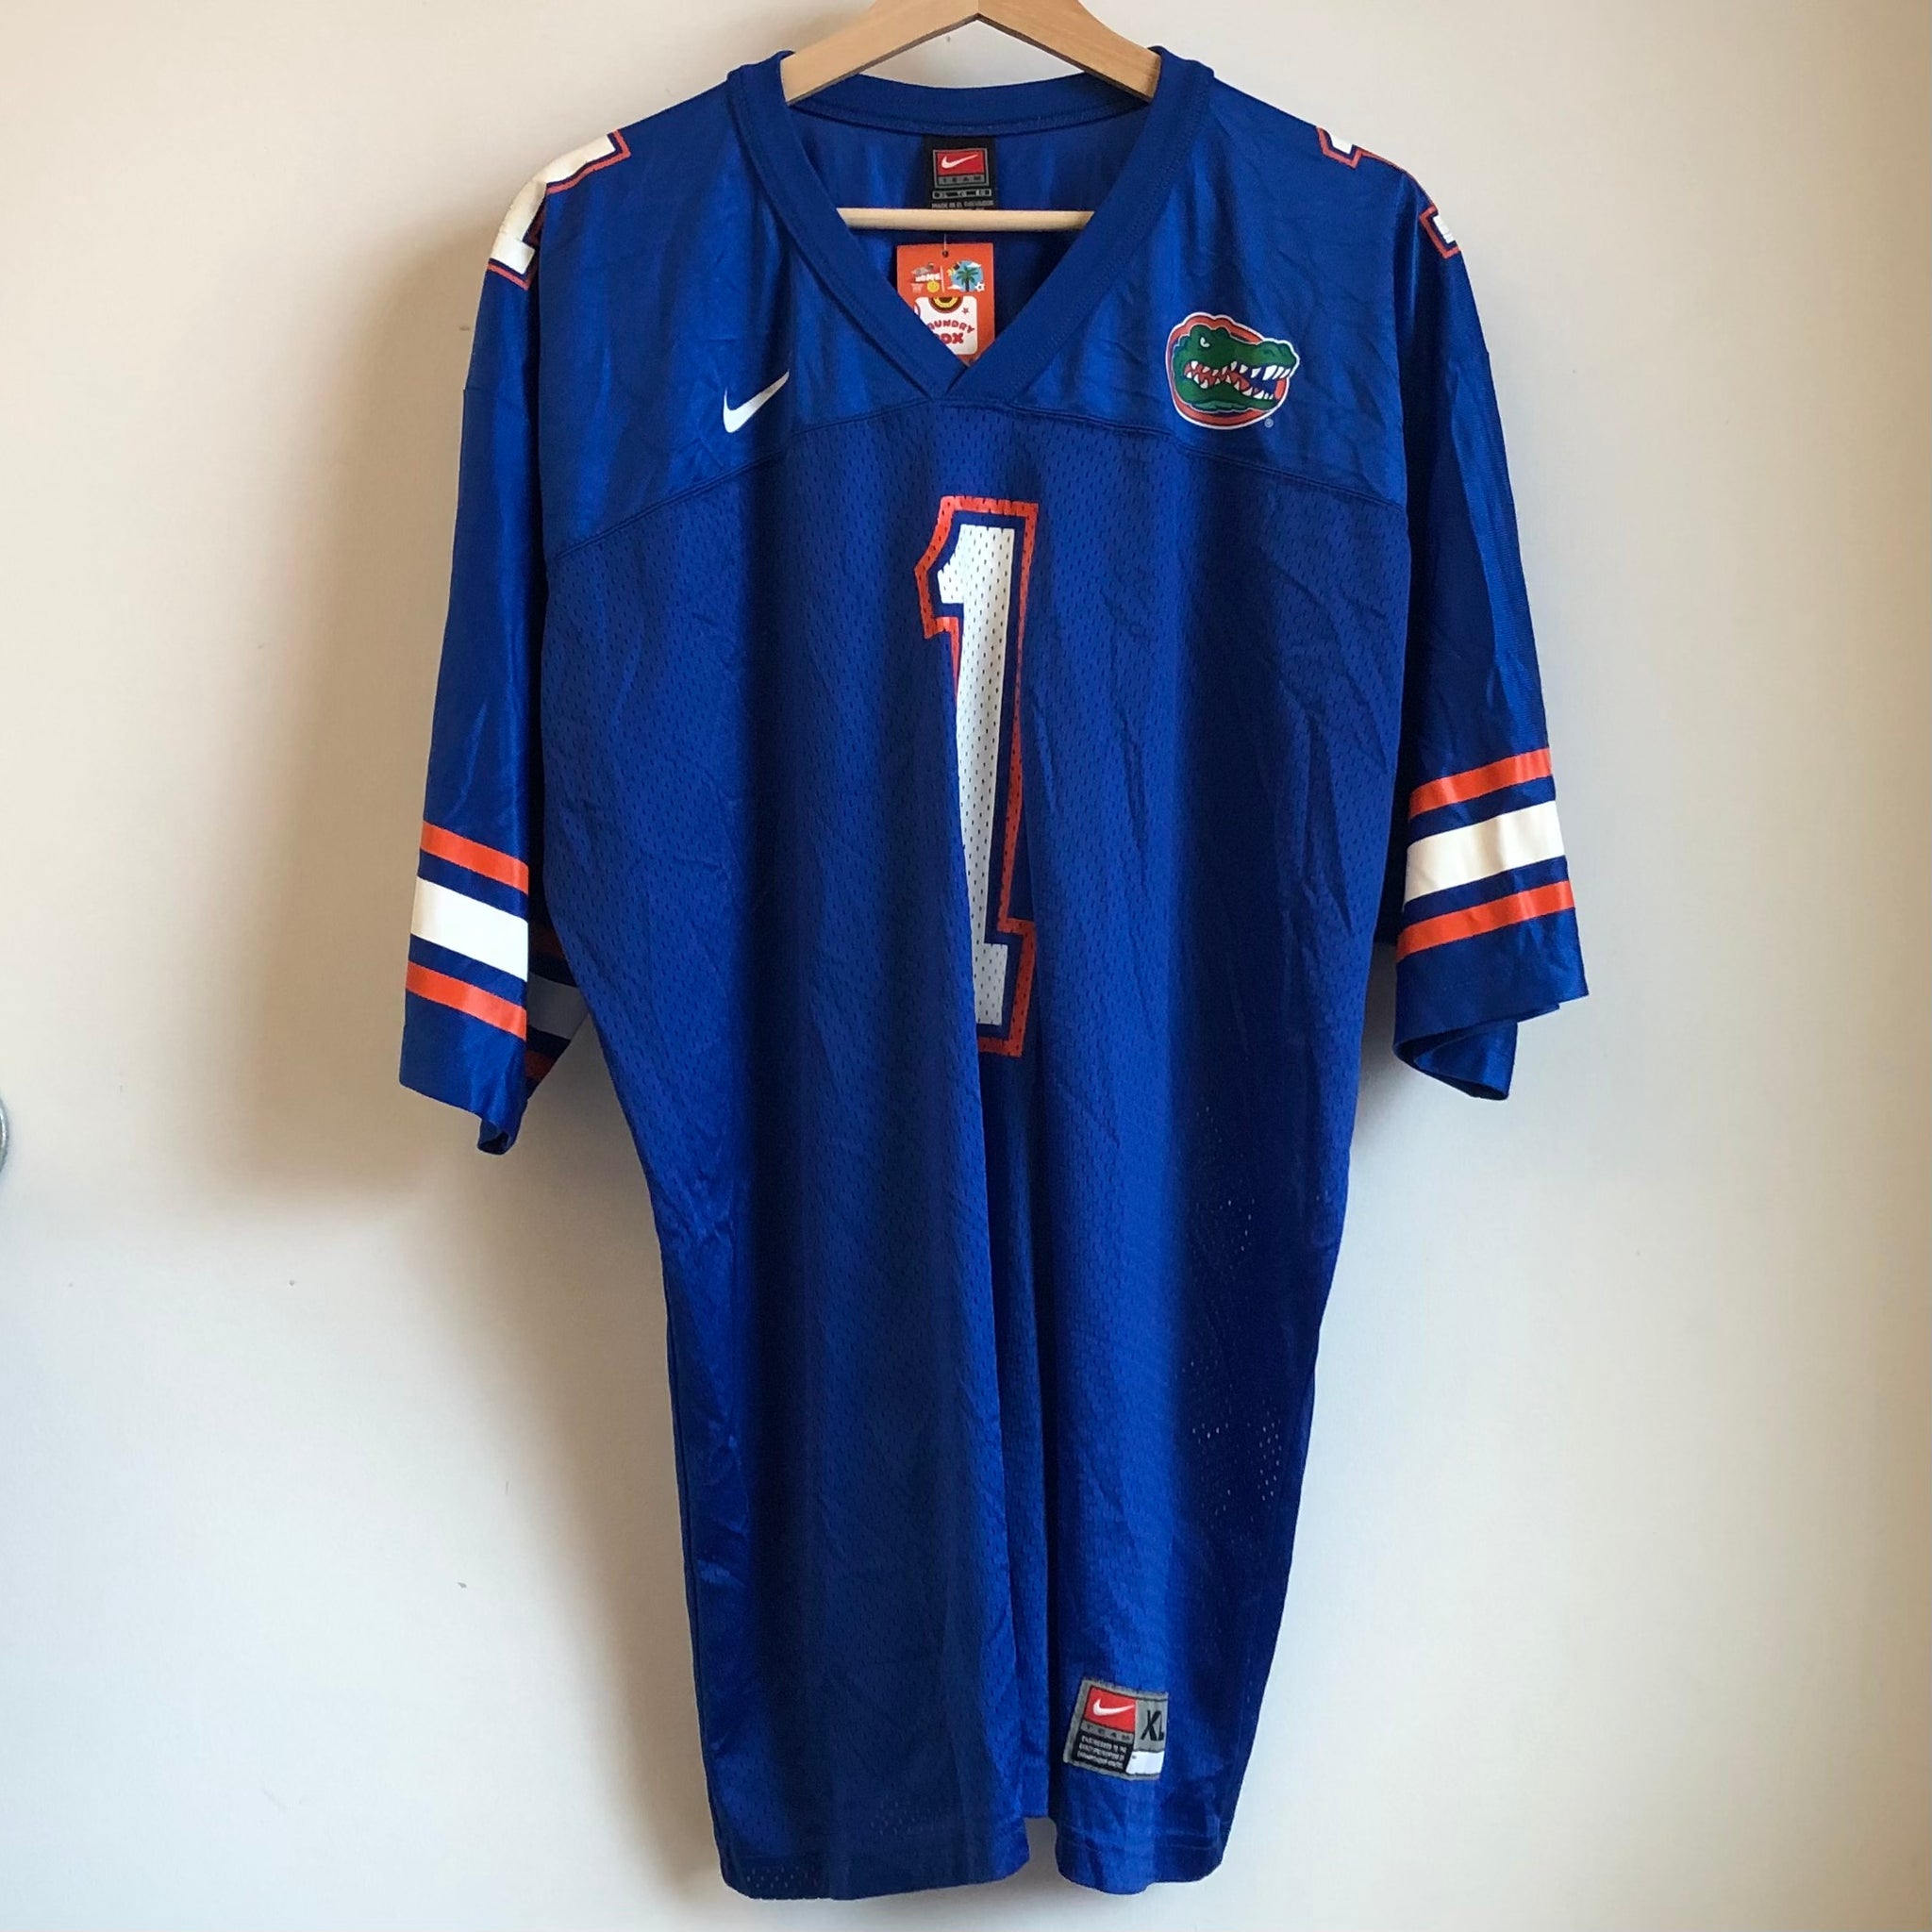 Vintage Florida Gators Football Jersey XL – Laundry